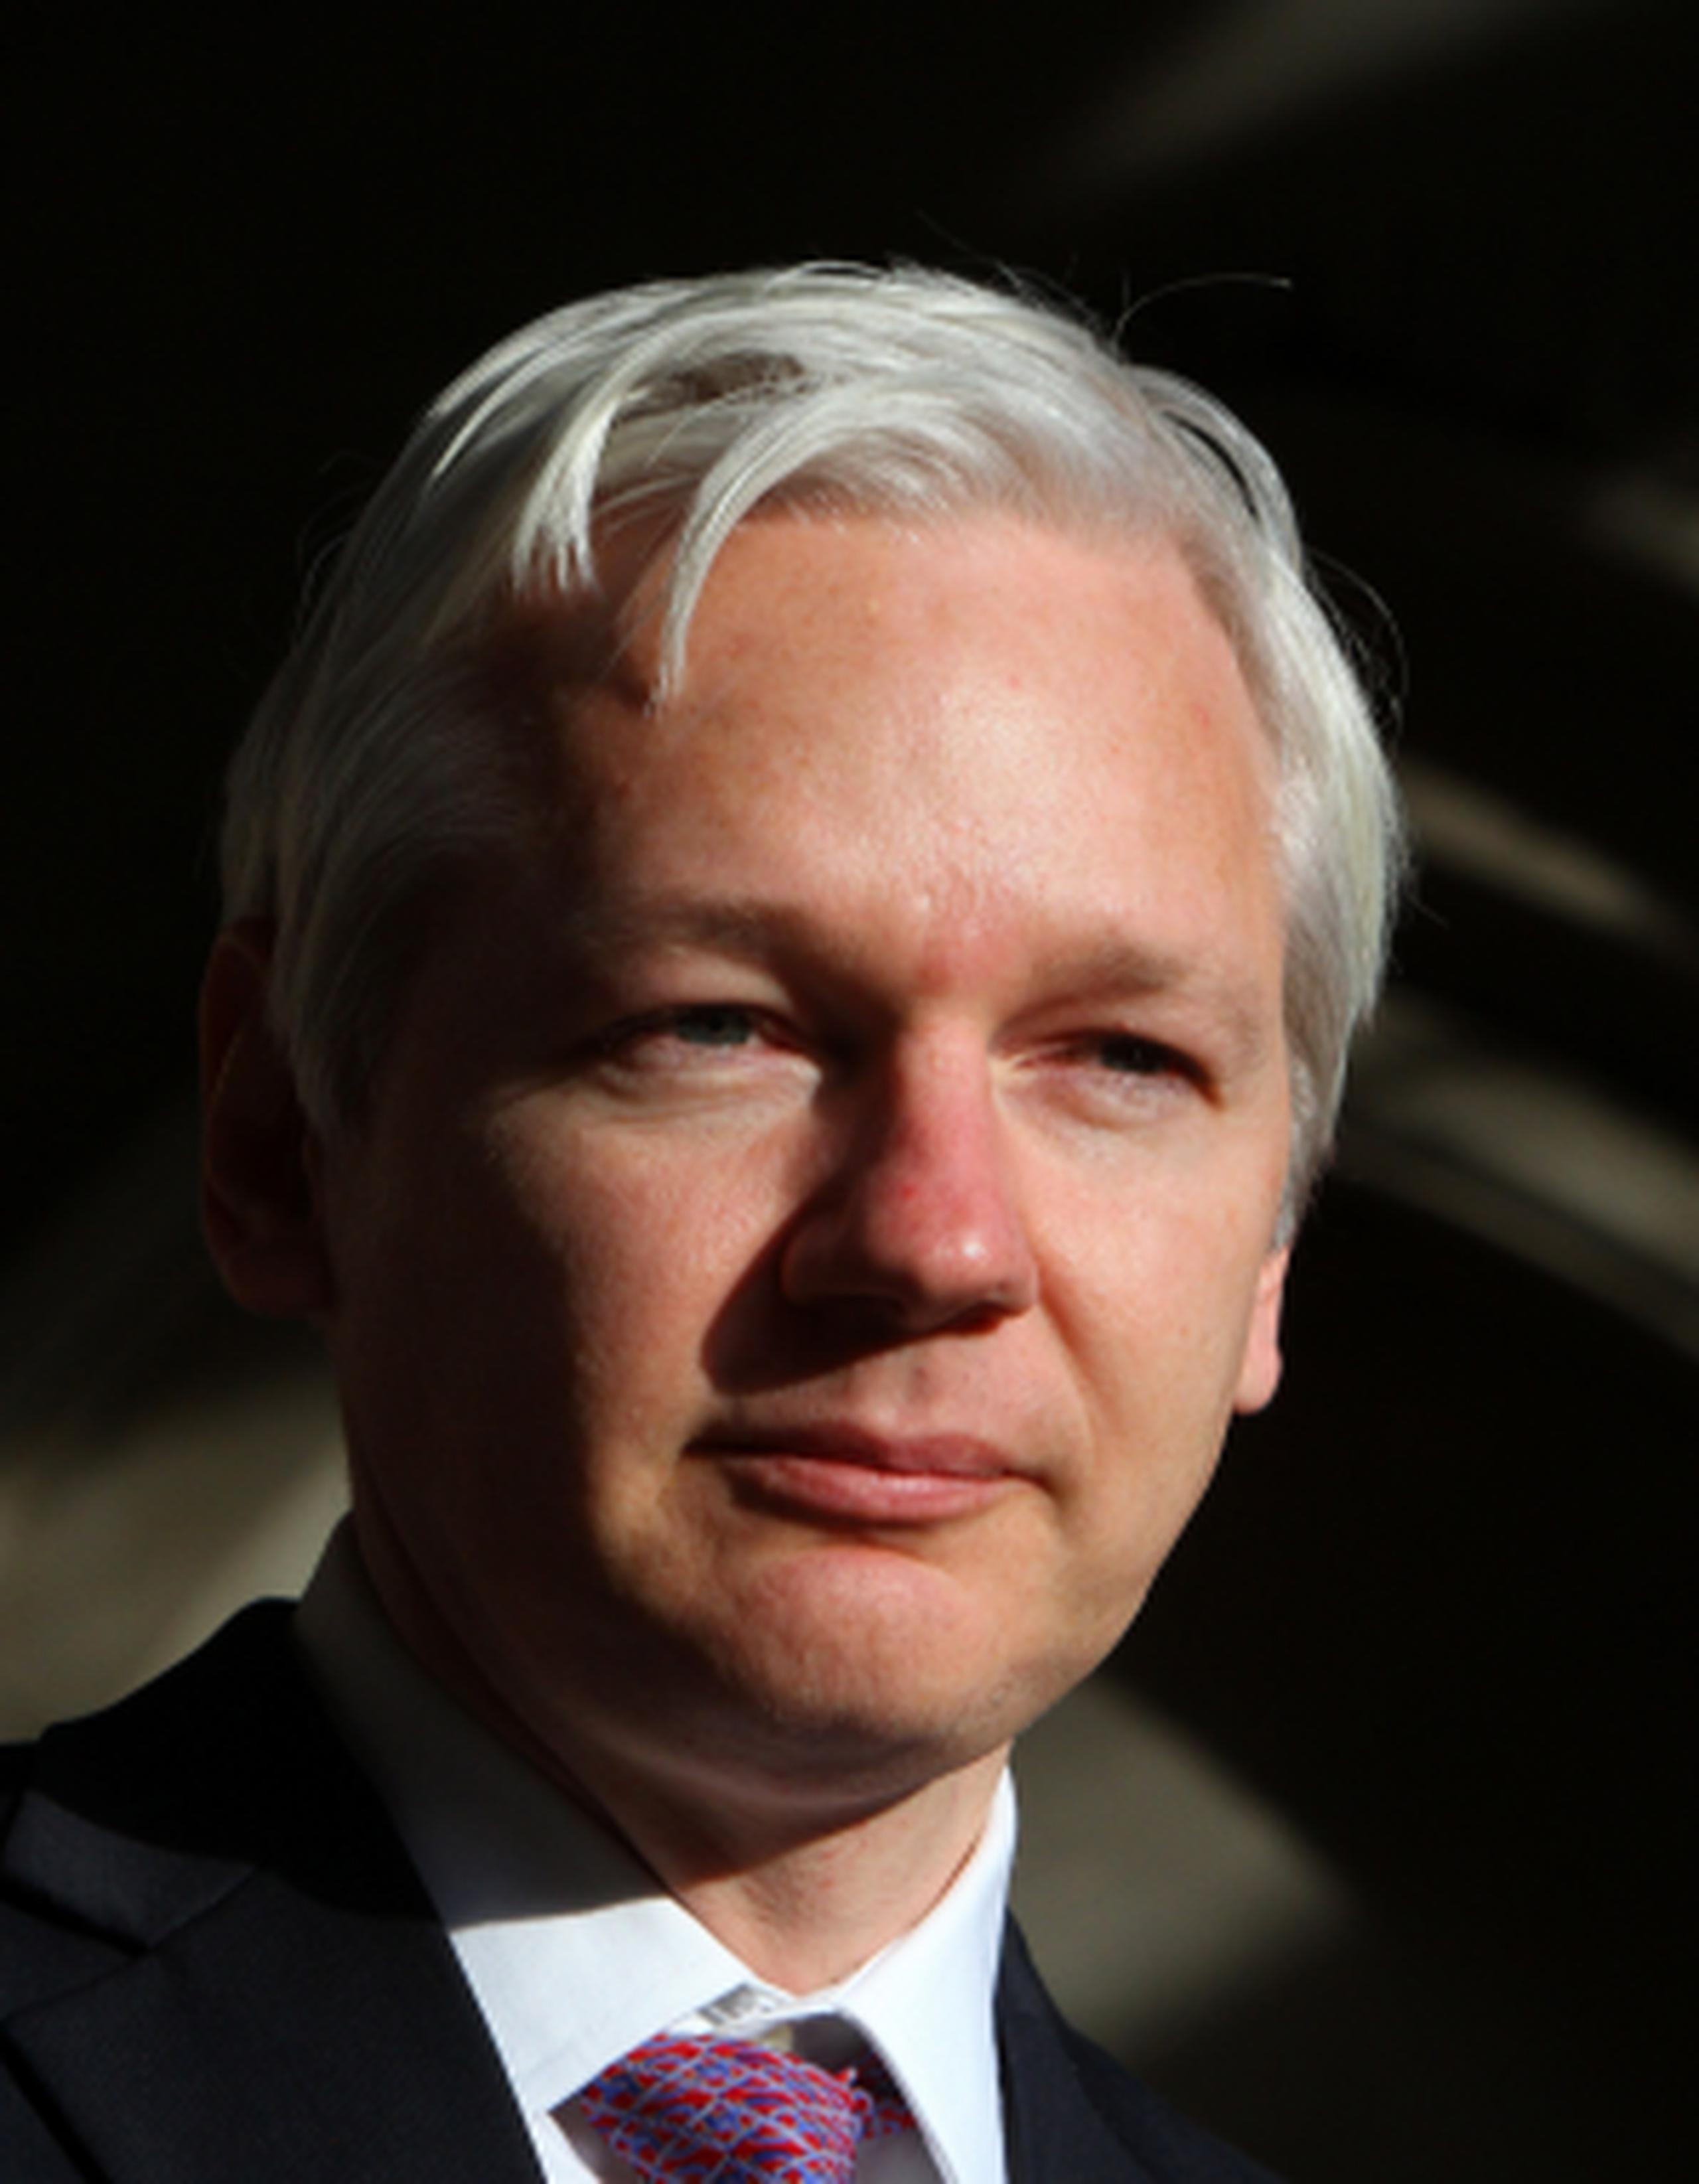 Assange se encuentra en la embajada de Ecuador en Londres desde el 19 de junio de 2012 luego haber pedido asilo político. (Archivo)